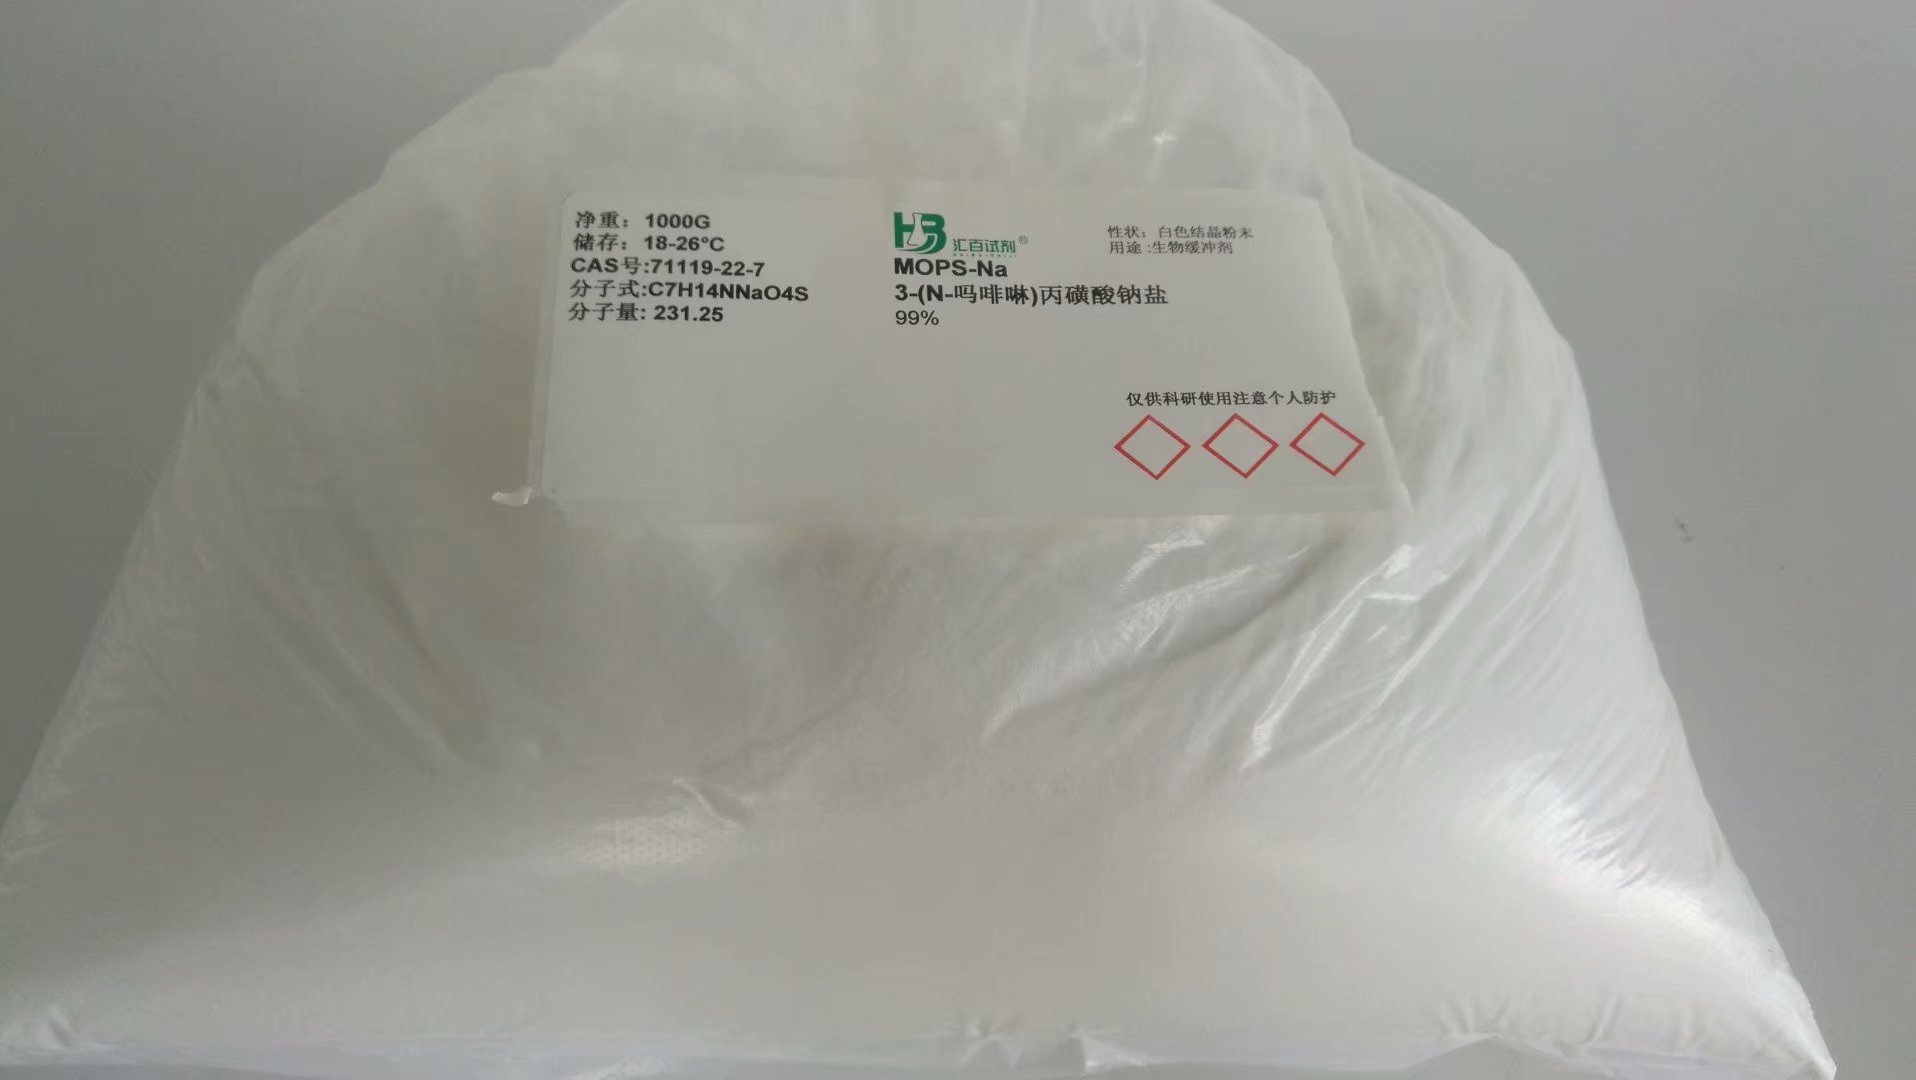 3-(N-吗啡啉)丙磺酸钠盐,MOPS-Na